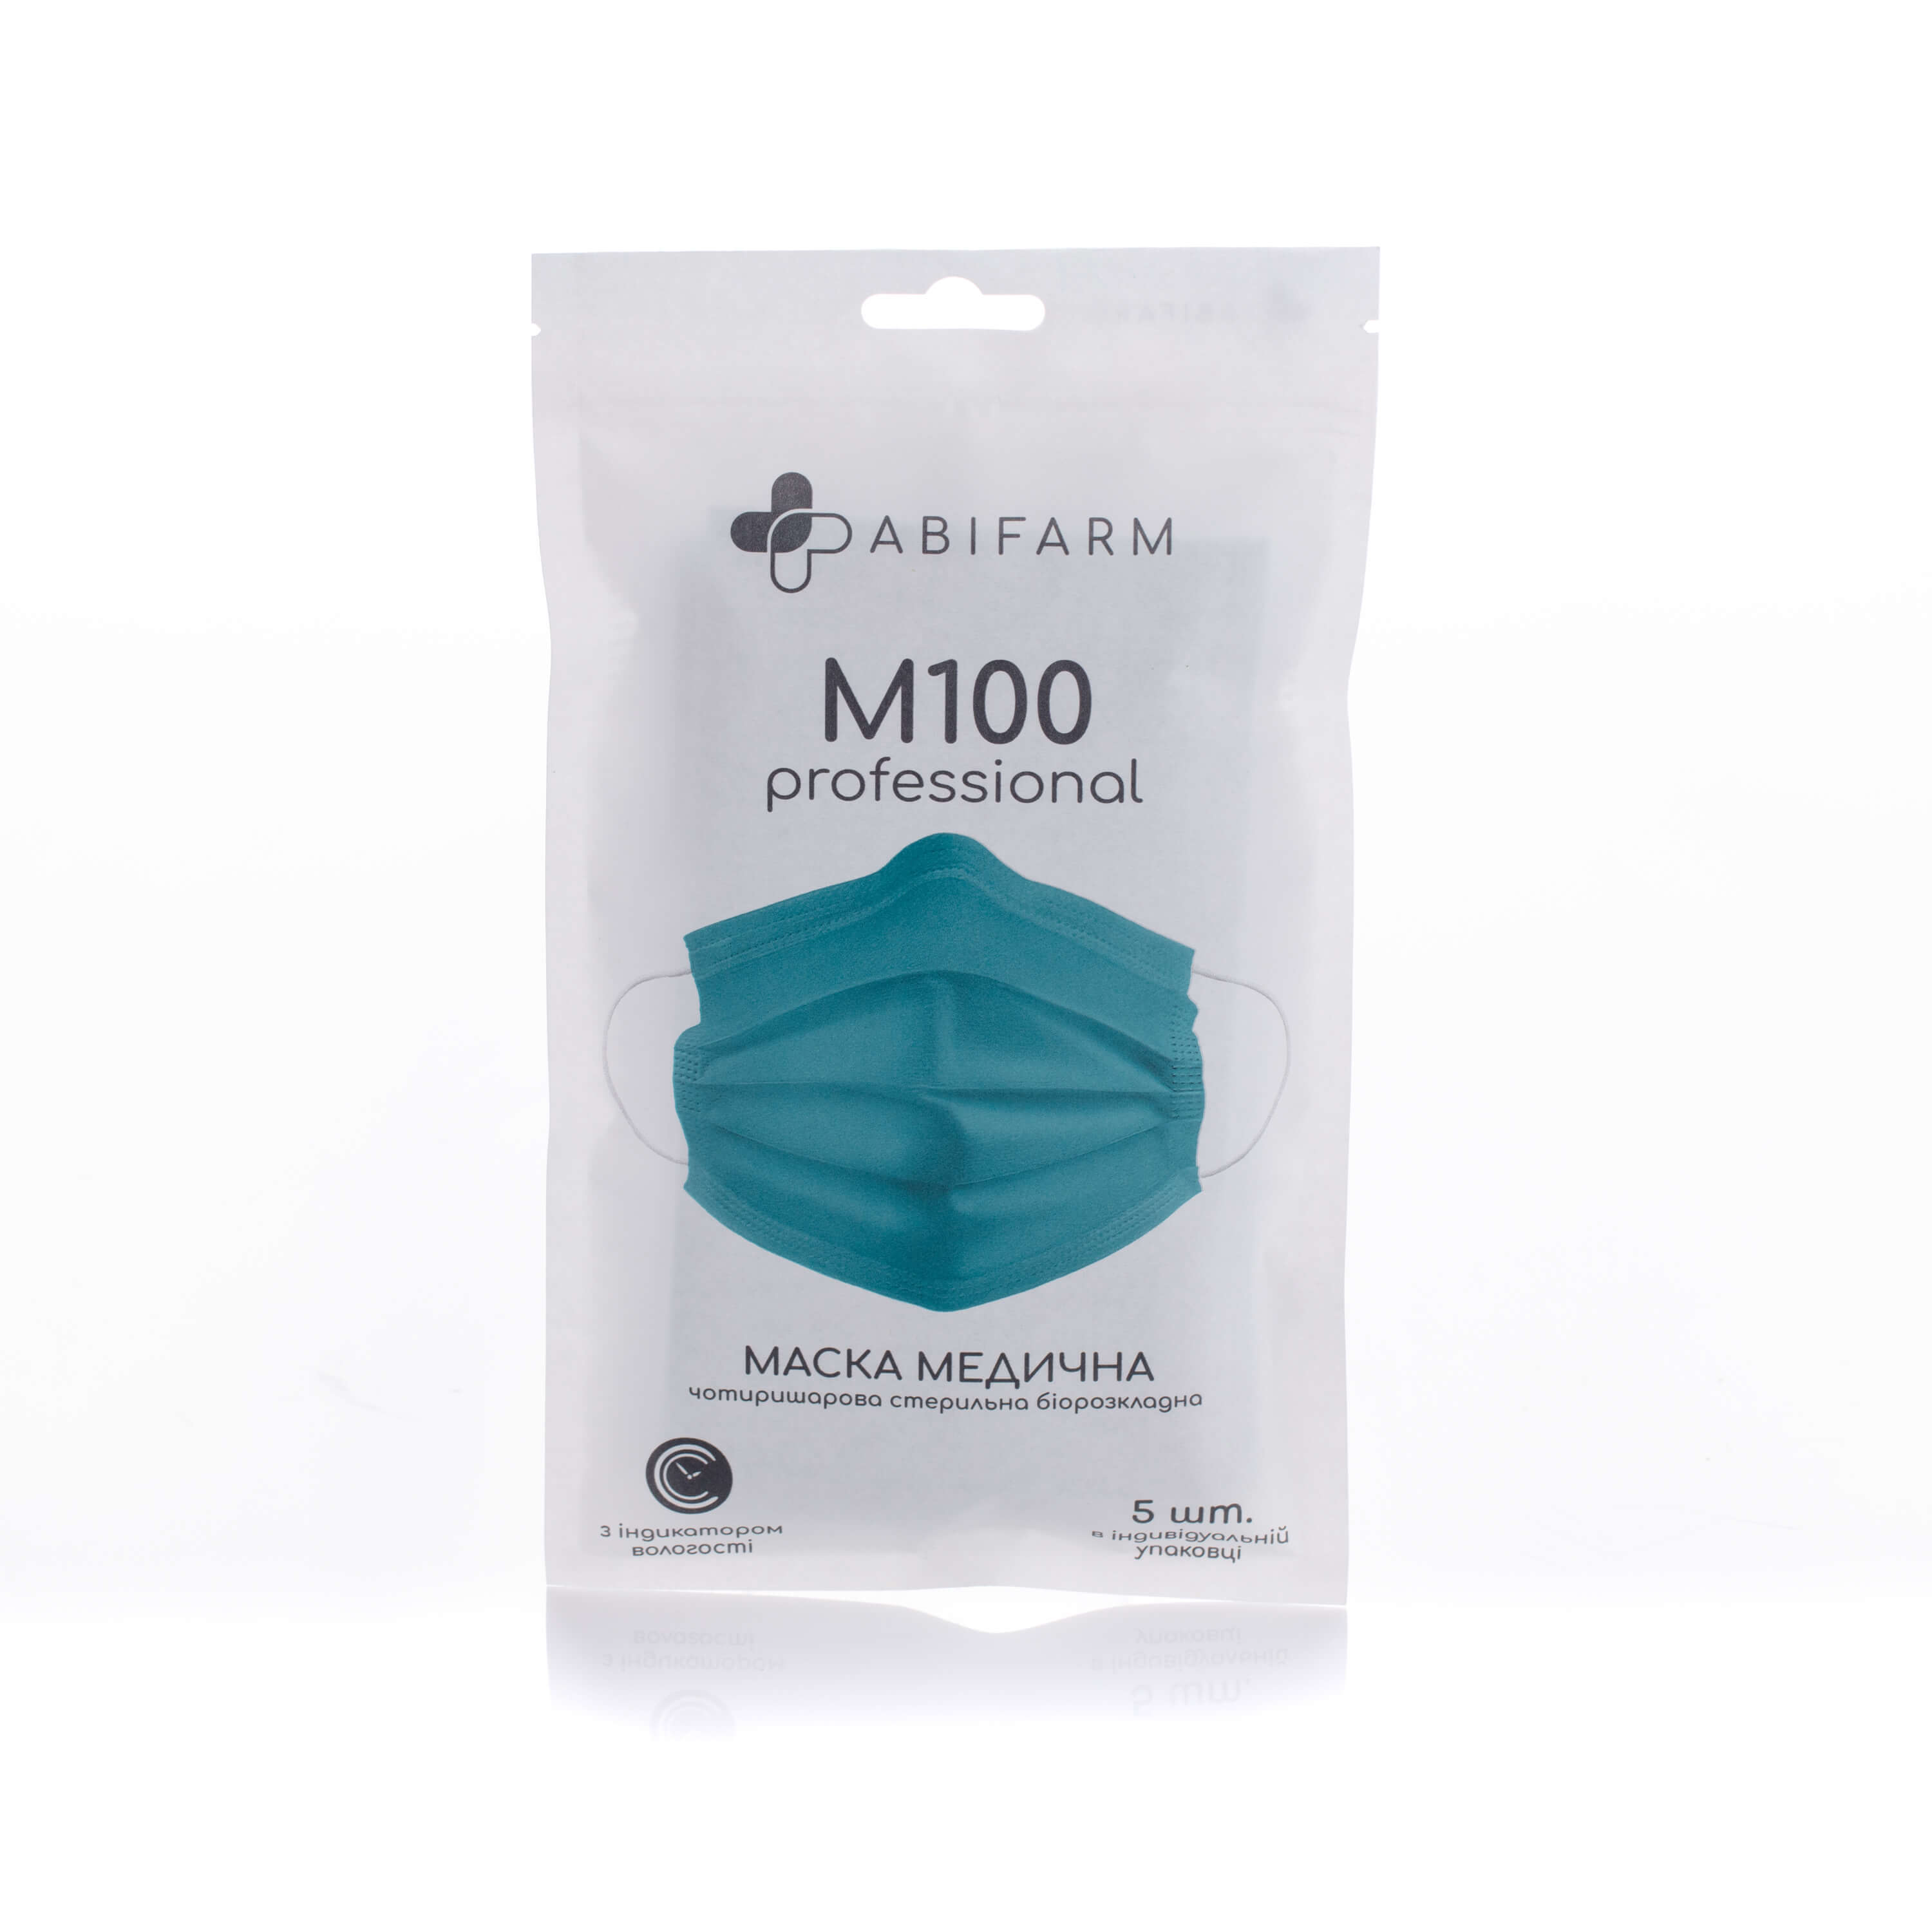 

Медичні маски Abifarm M100 з індикатором вологості, 4-шарові, стерильні 5 шт, M100 Professional, з індикатором вологості